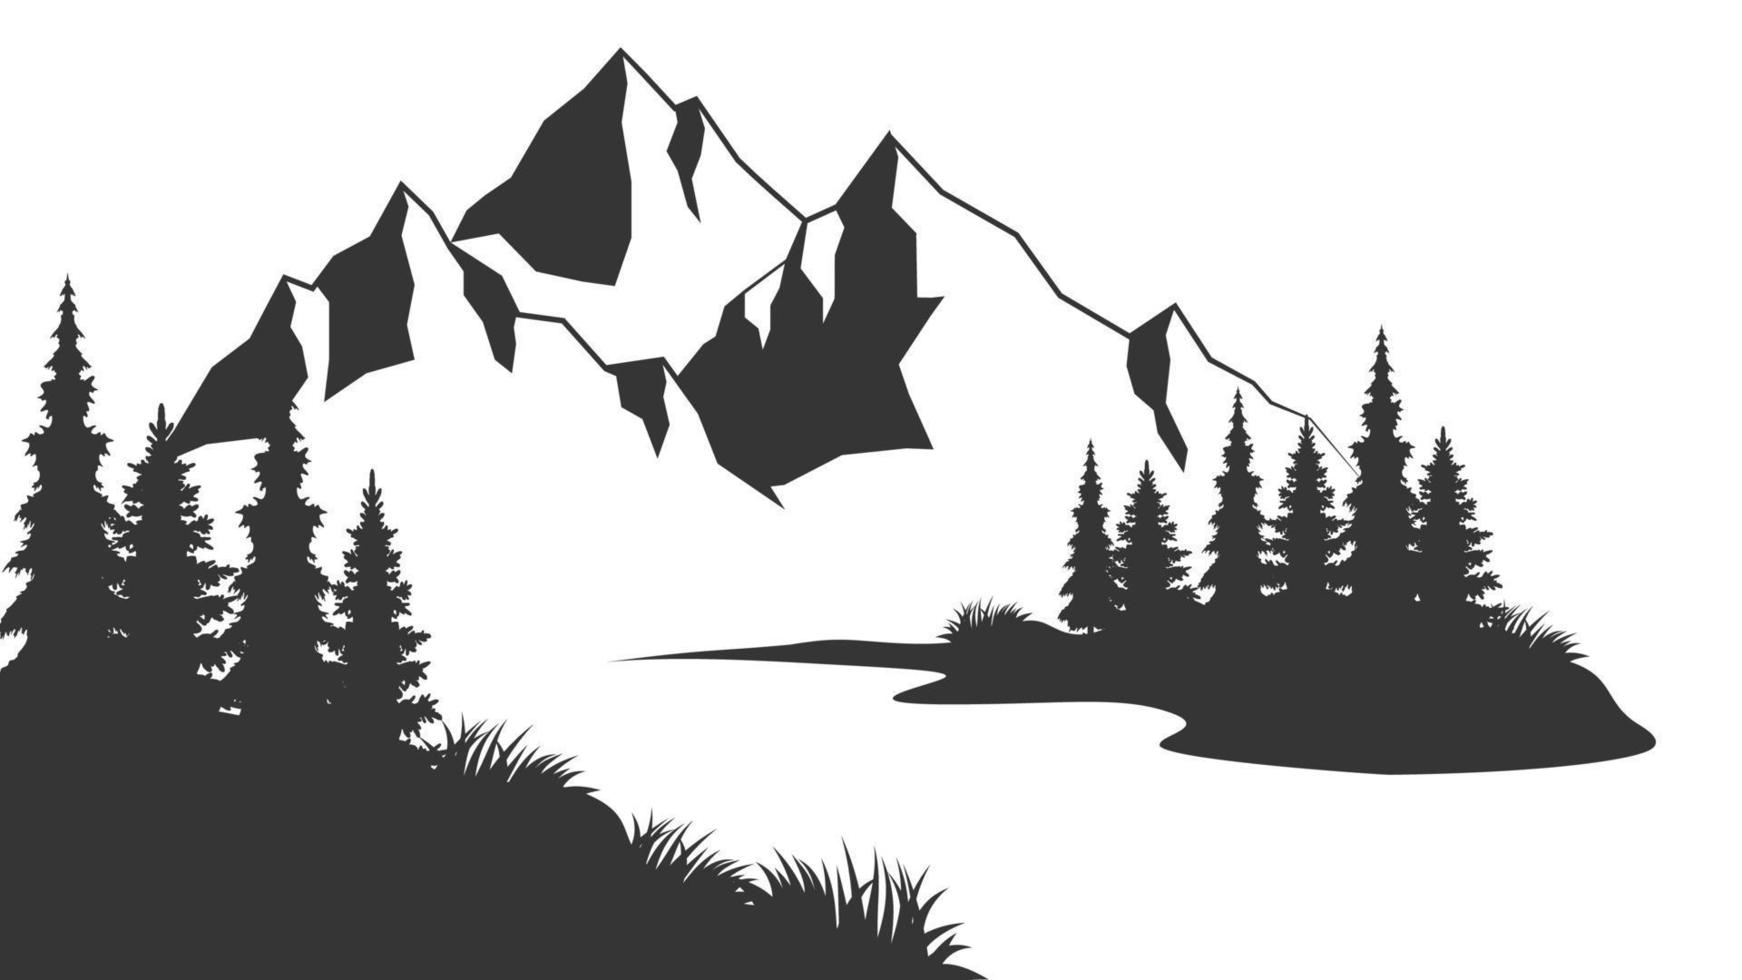 montagna silhouette vettore illustrazione. montagna gamma silhouette isolato vettore illustrazione. vecchio stile nero e bianca montagna vettore illustrazione.